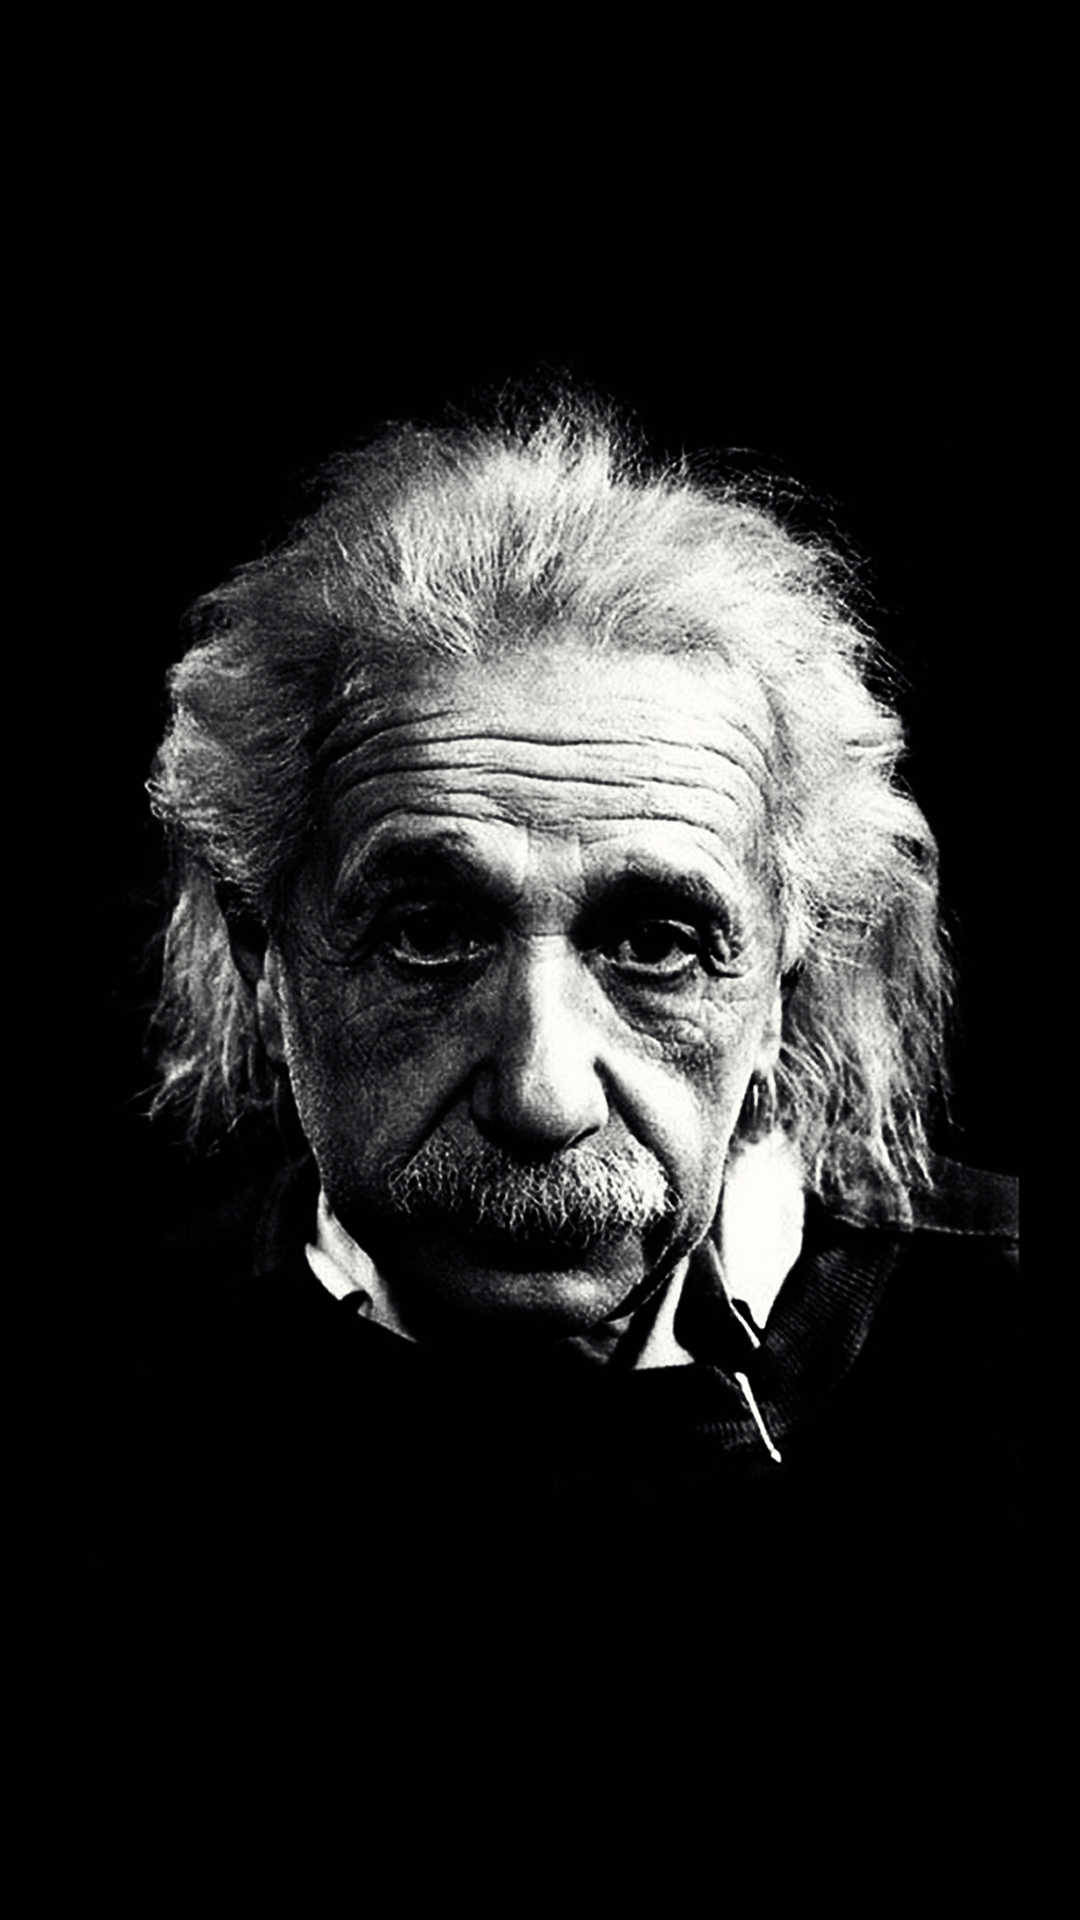 アインシュタイン壁紙hd,面,黒と白,頭,肖像画,モノクロ写真